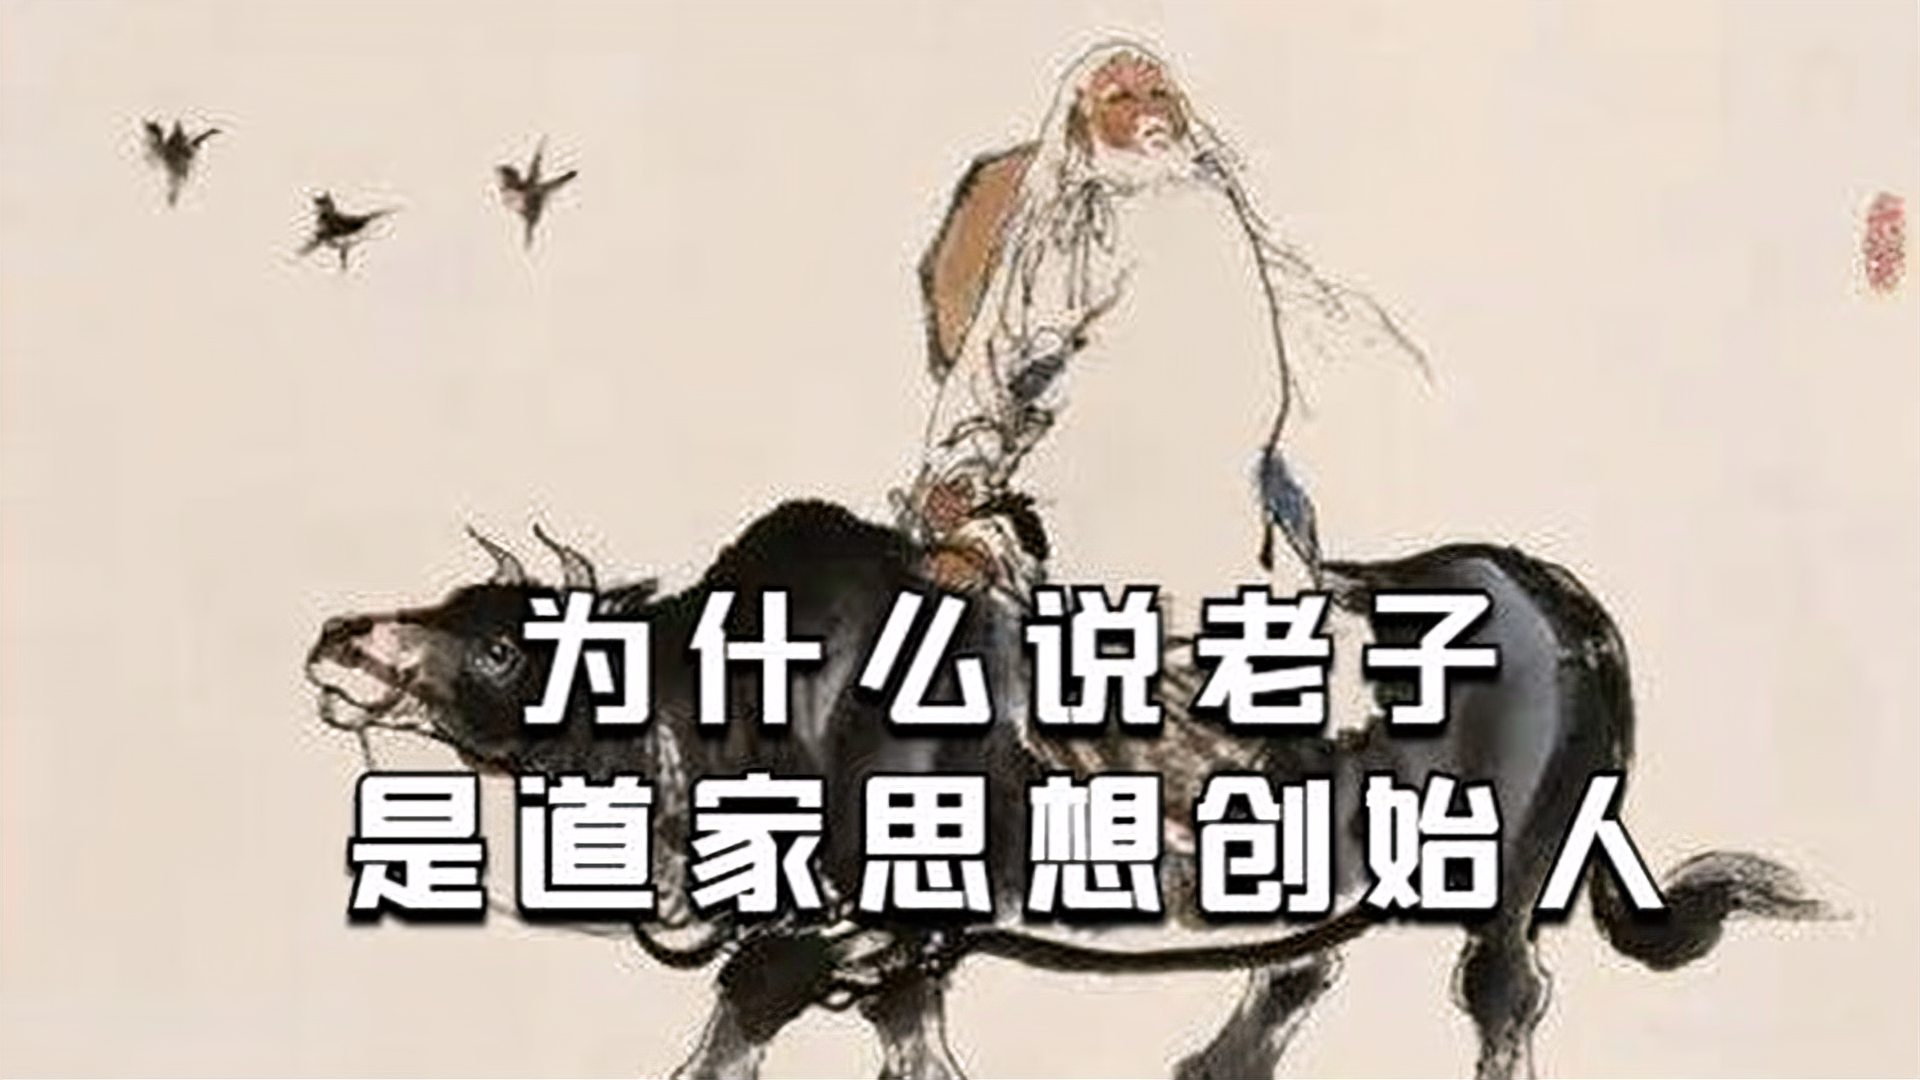 上个世纪后期,当代儒家在大陆与海外蓬勃劲发的时候